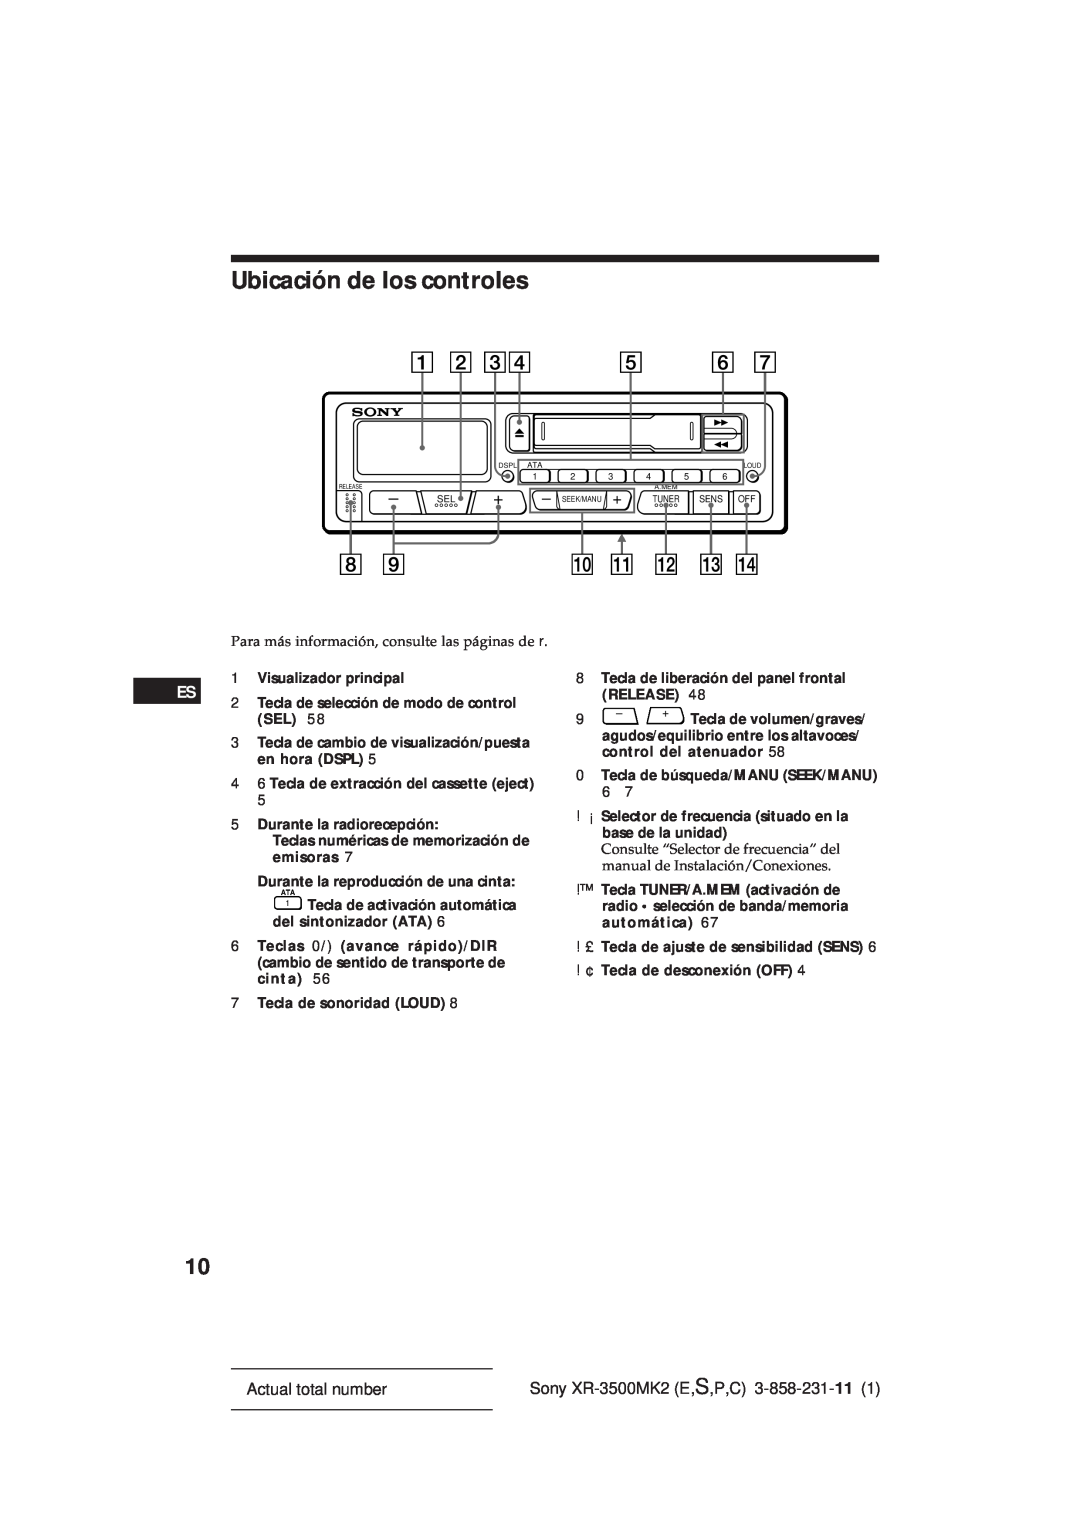 Sony manual Ubicación de los controles, Actual total number, Sony XR-3500MK2E,S,P,C 